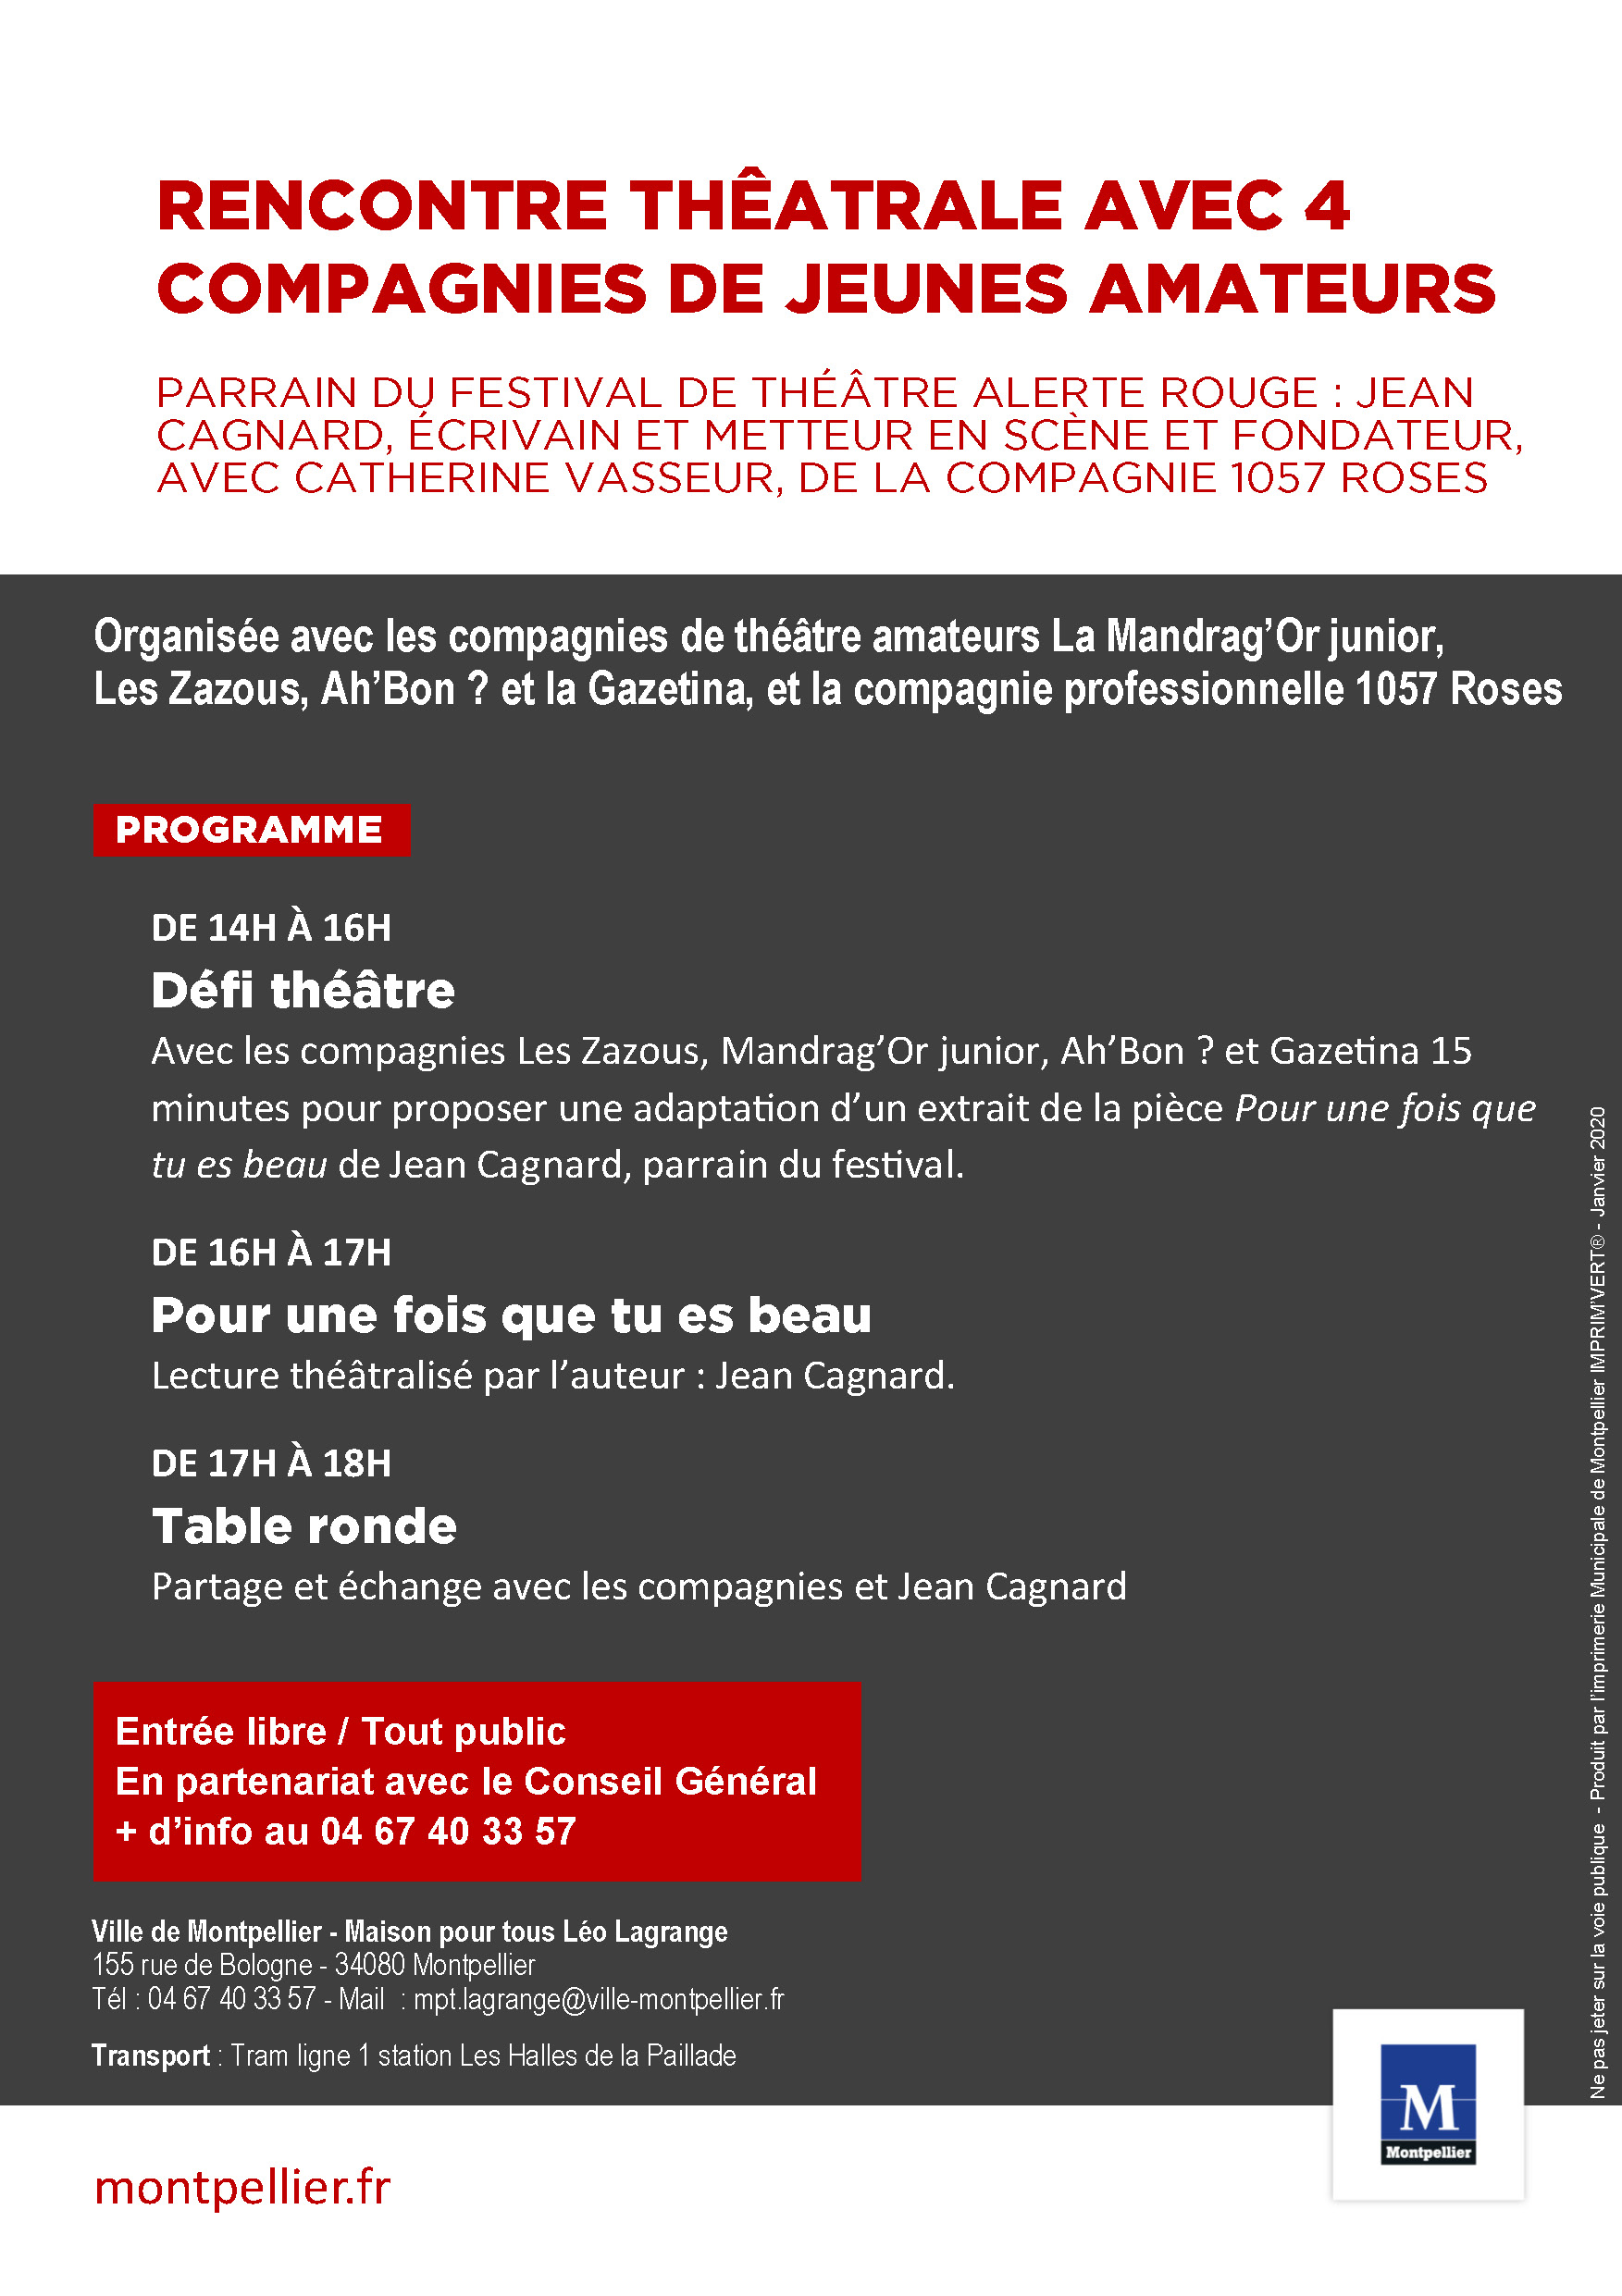 Trainance - Jean Cagnard parrain du 5ème Festival de Théâtre Alerte Rouge